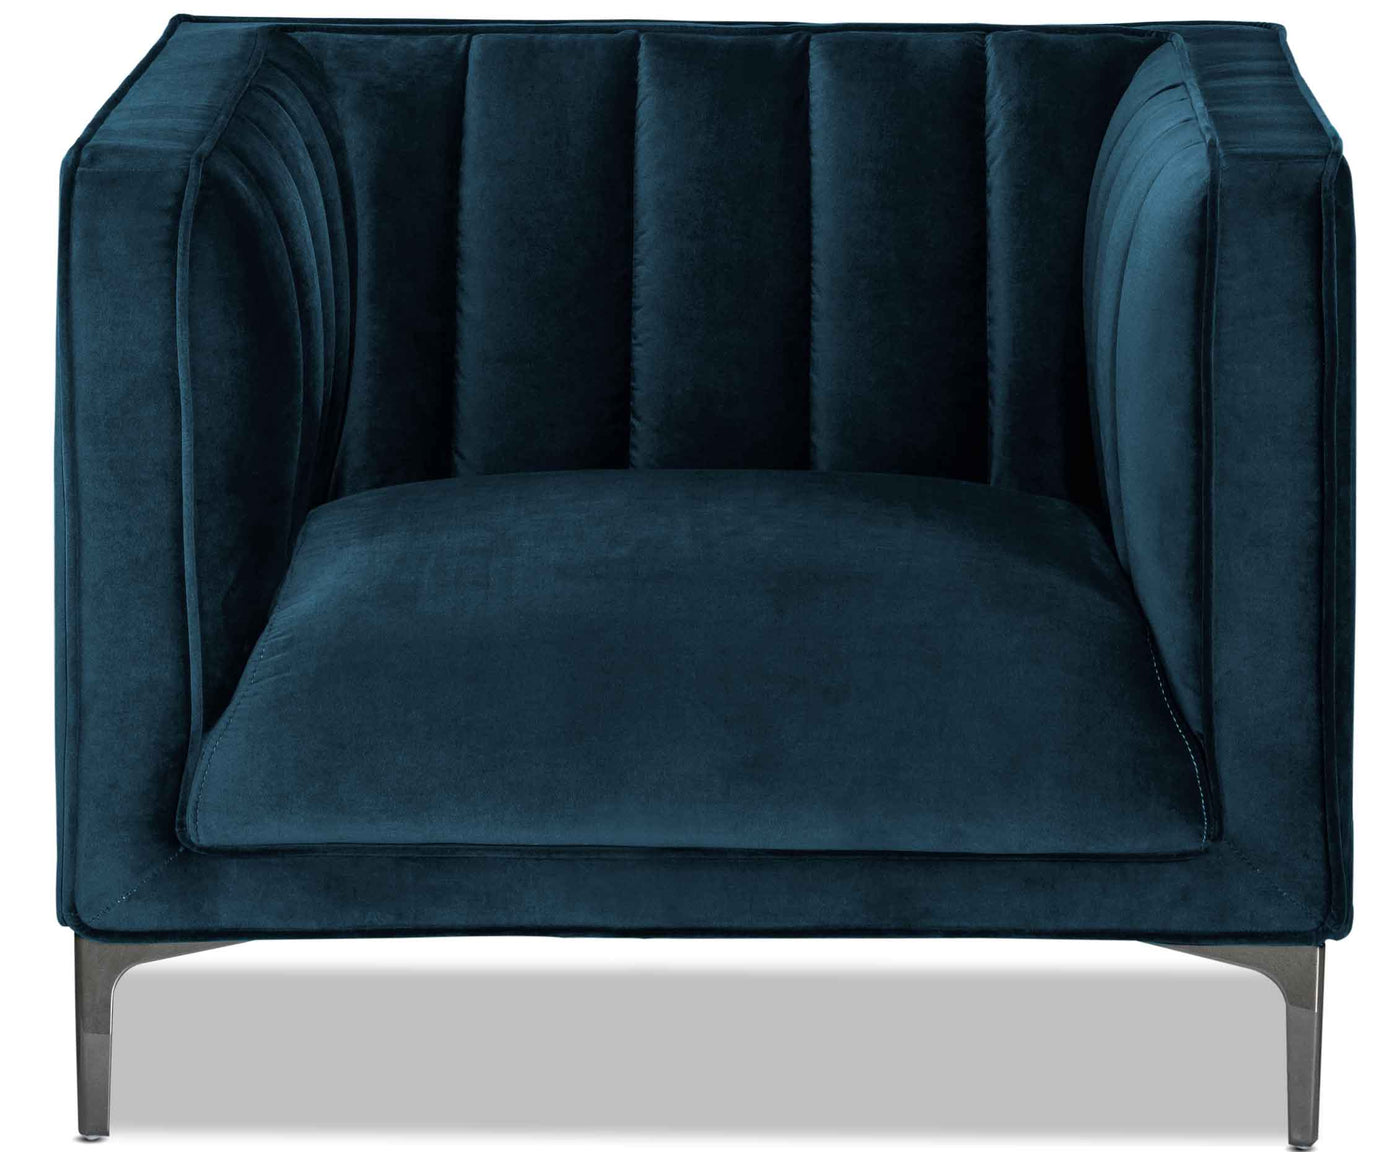 Celina Chair - Blue